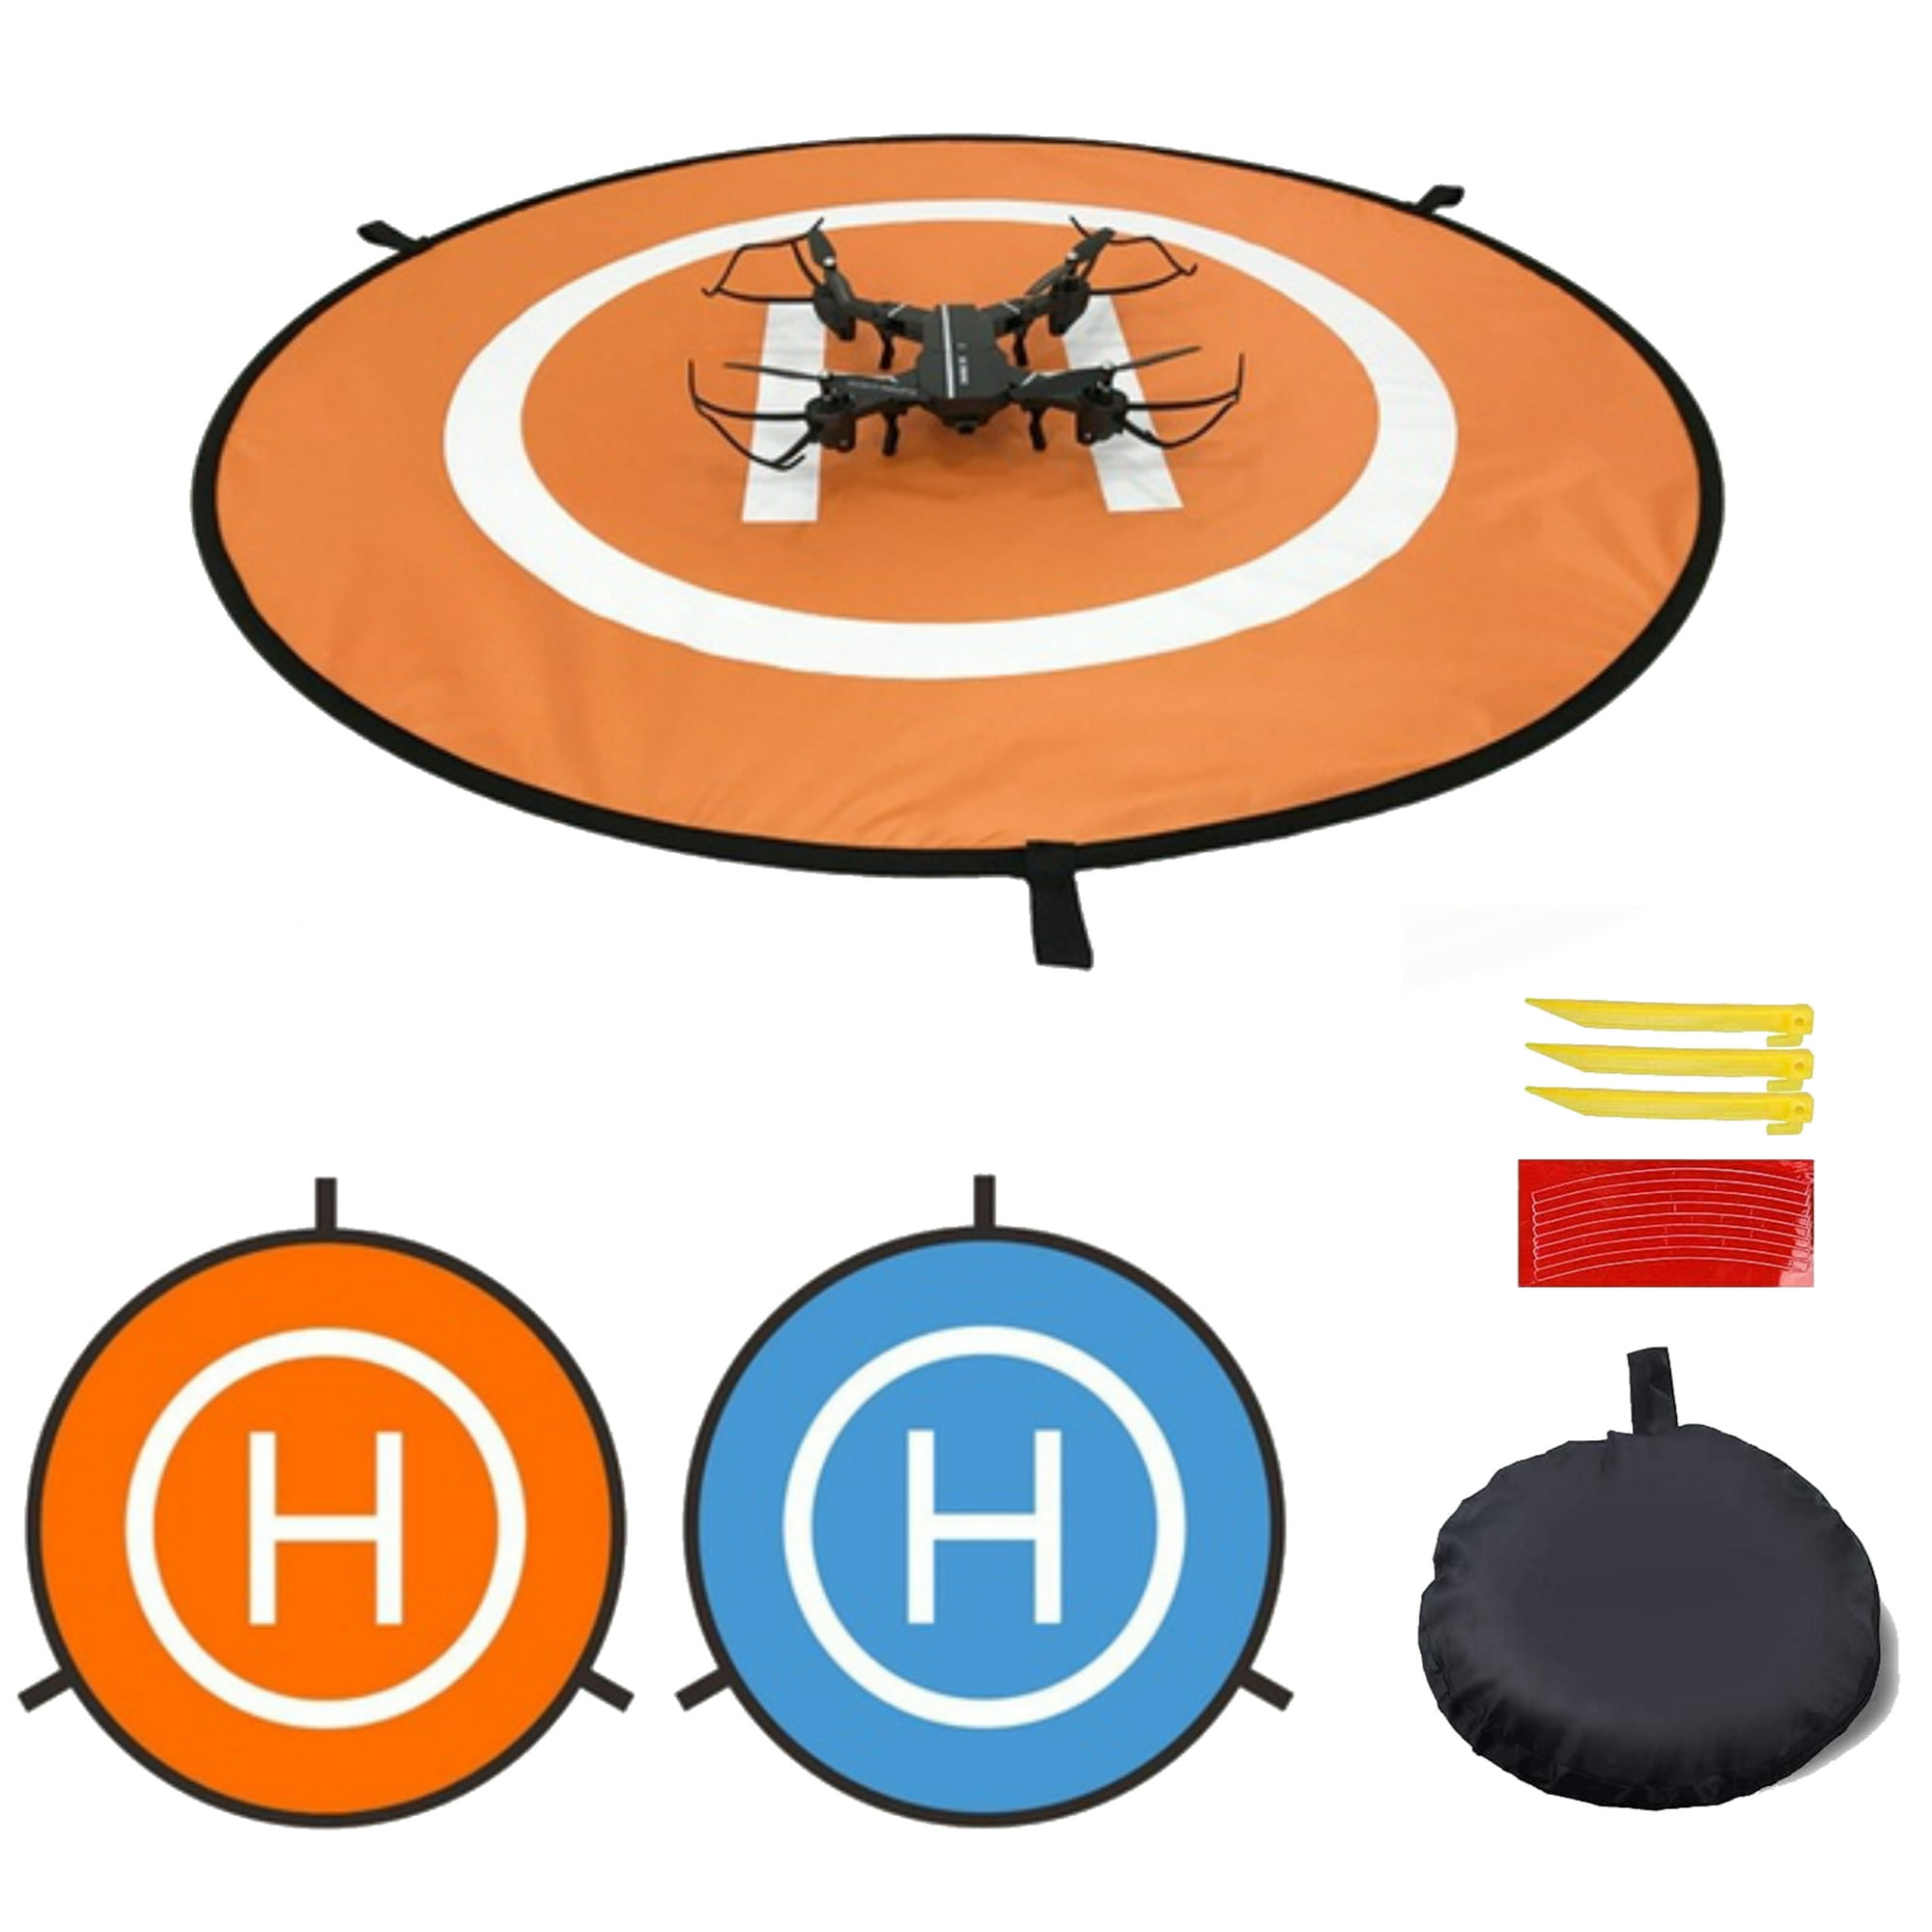 Drone landing pad de 55 cemtimetros plegable doble vista nylon impermeable pista de aterrizaje y despegue compatible con drones dji mavic y todas las demás marcas del mercado